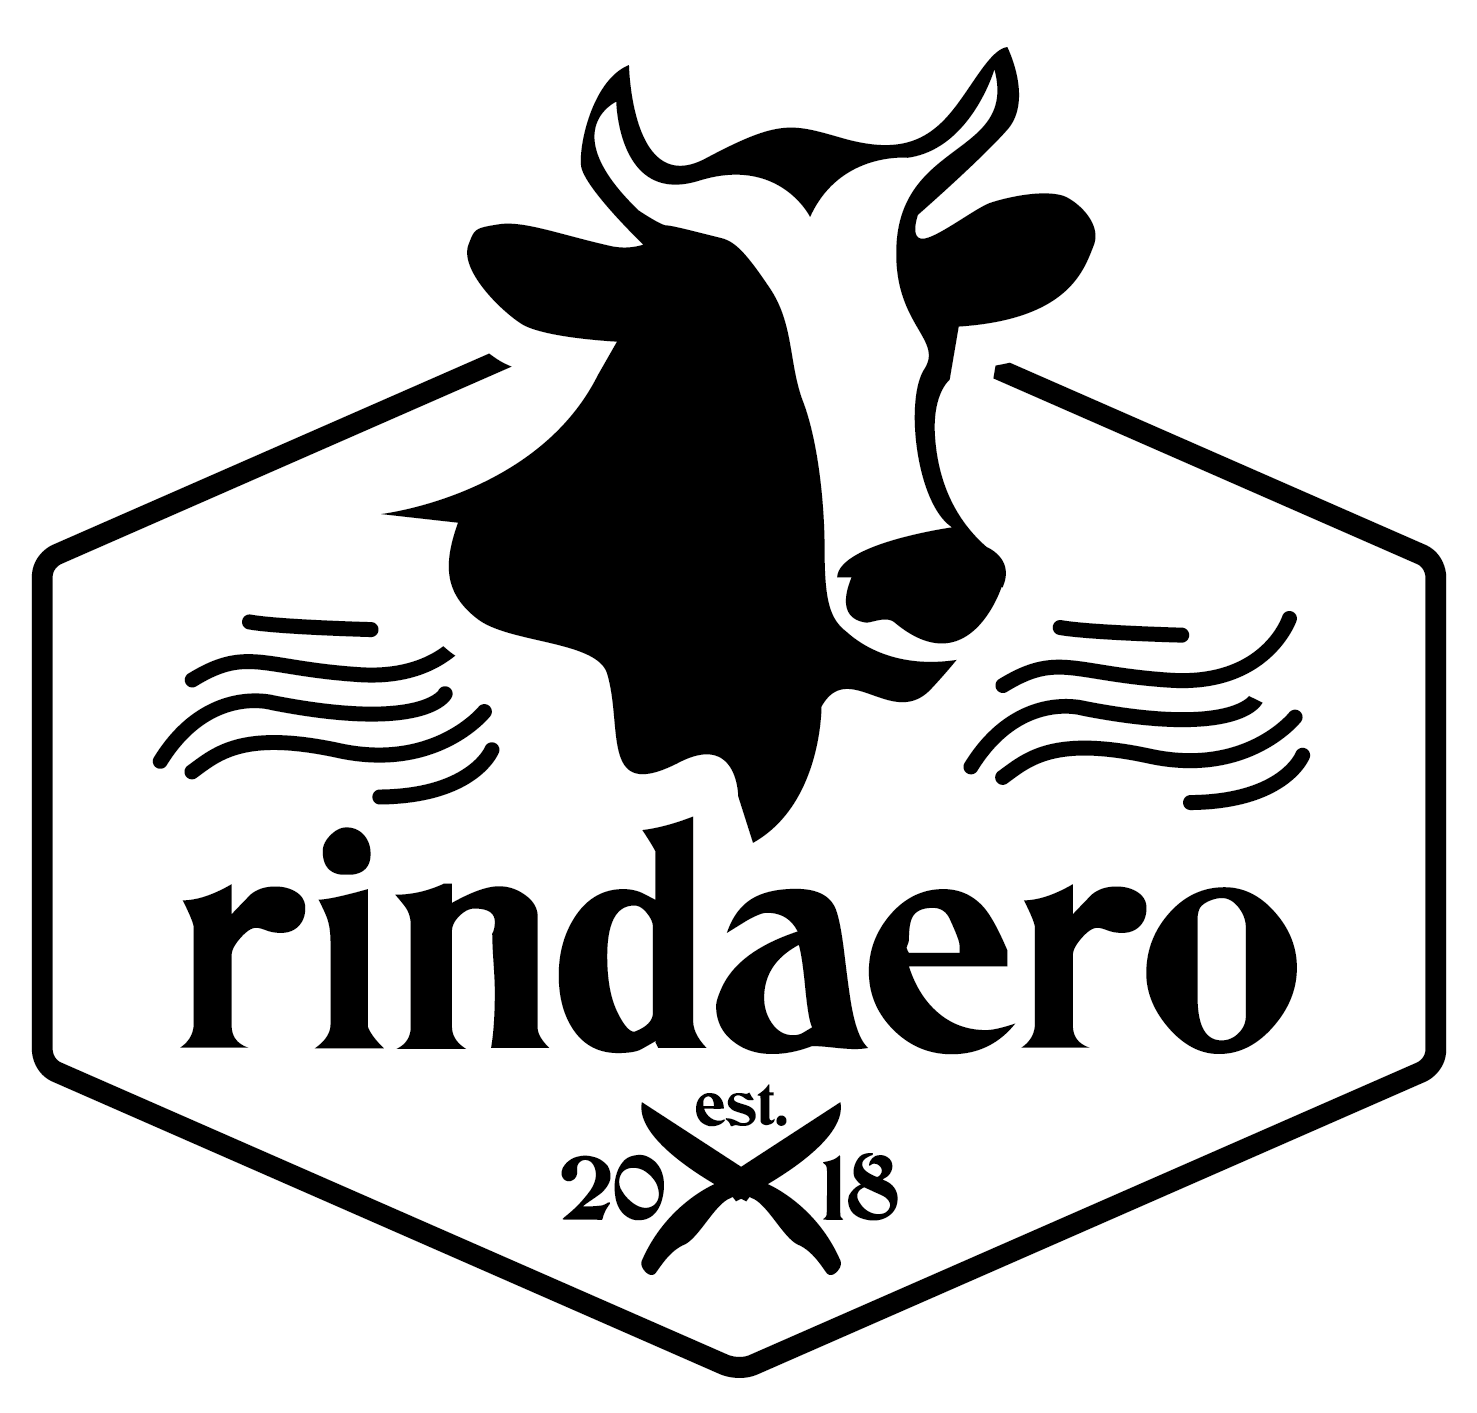 rindaero